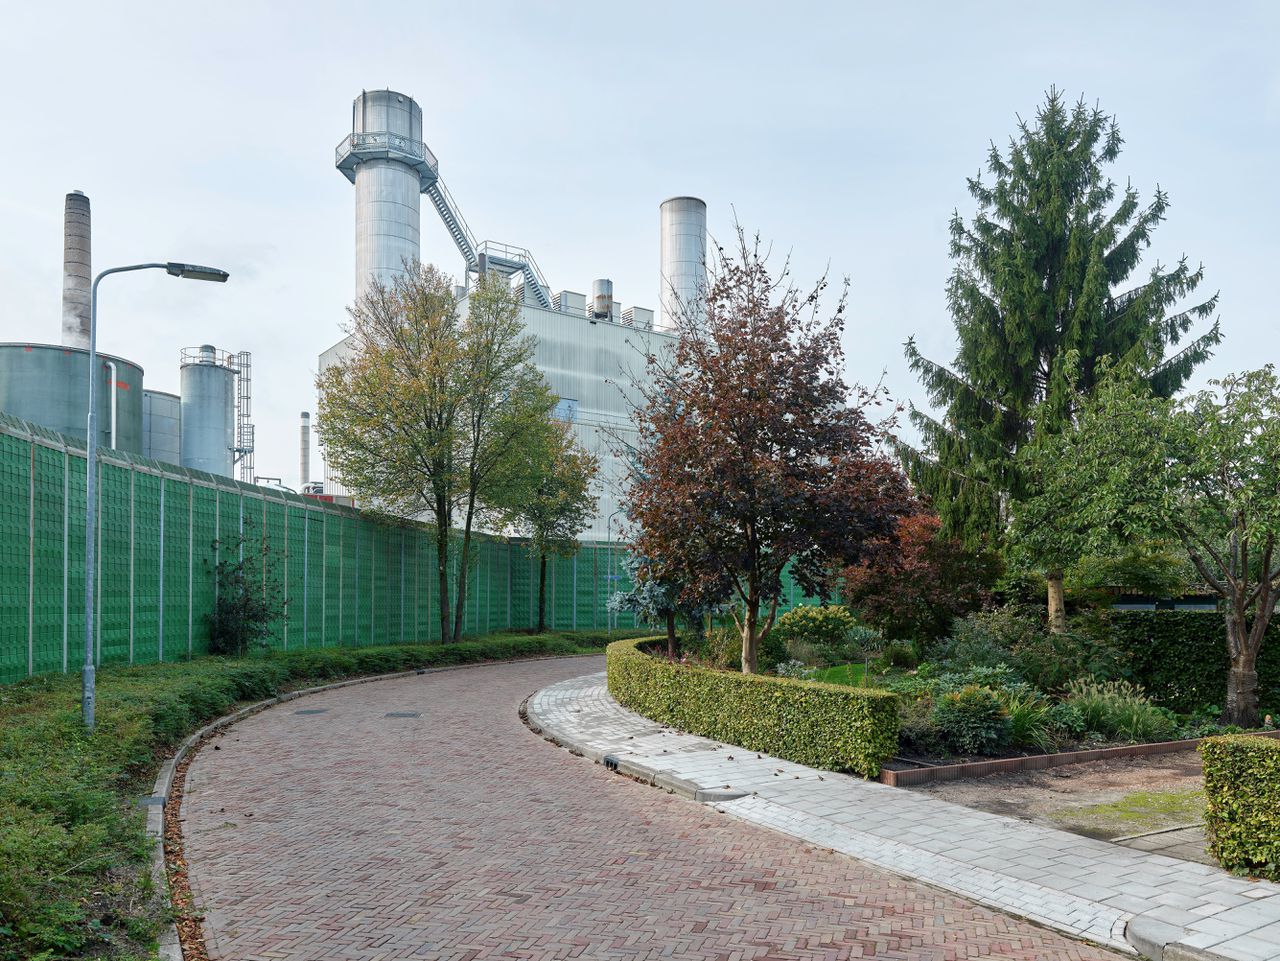 Eerbeek is een dorp met papierindustrie. Langs ’t Haagje worden wonen en papierfabriek DS Smith De Hoop van elkaar gescheiden door een hoge groene wand.